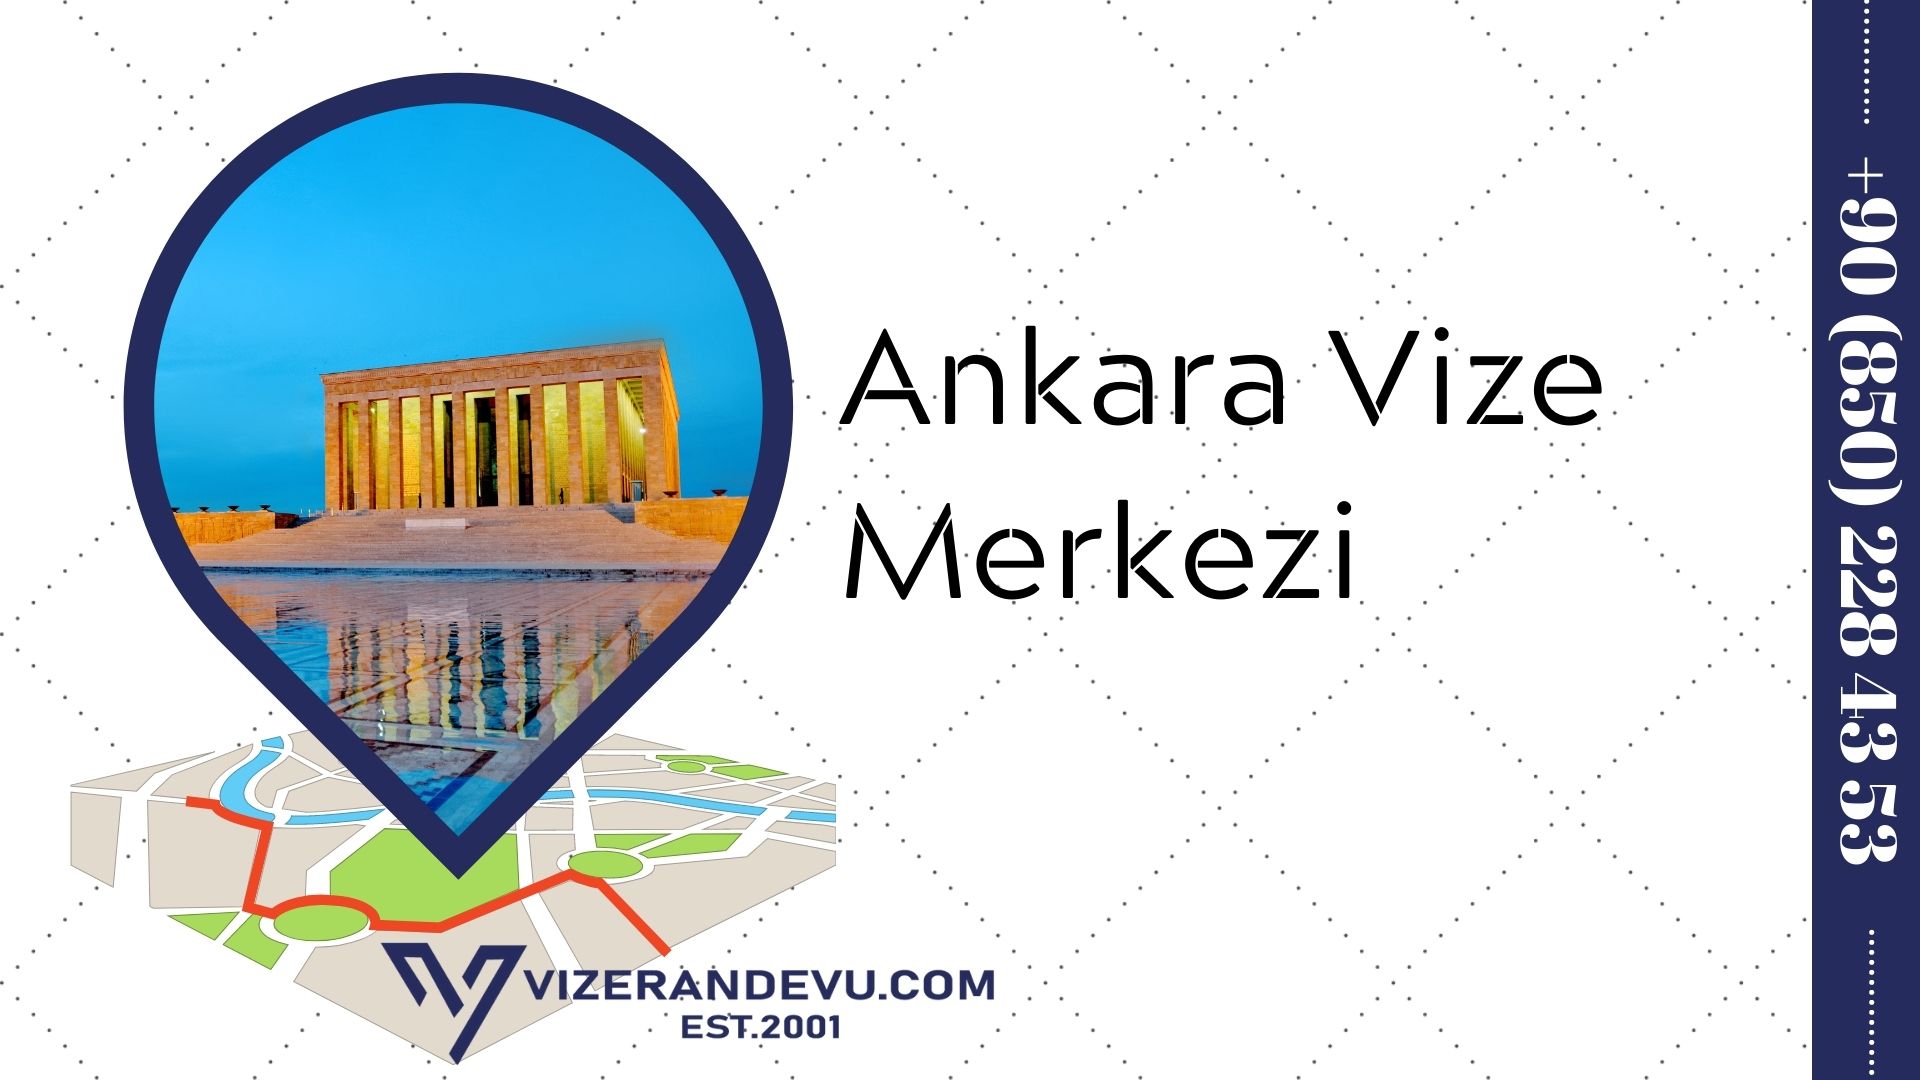 Ankara Vize Merkezi